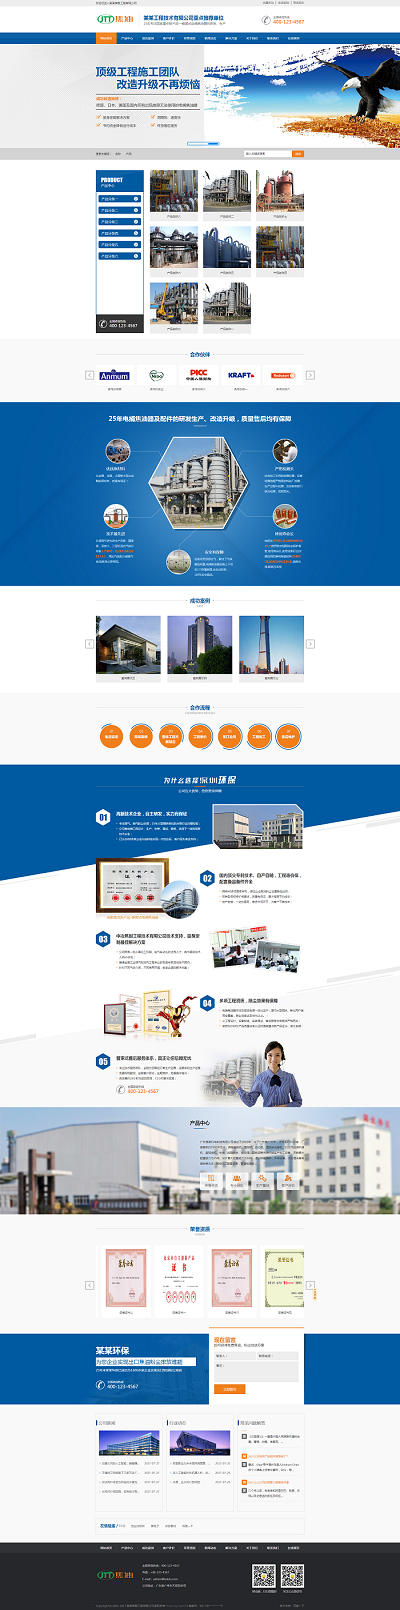 广州市环保设备有限公司营销型官网模板